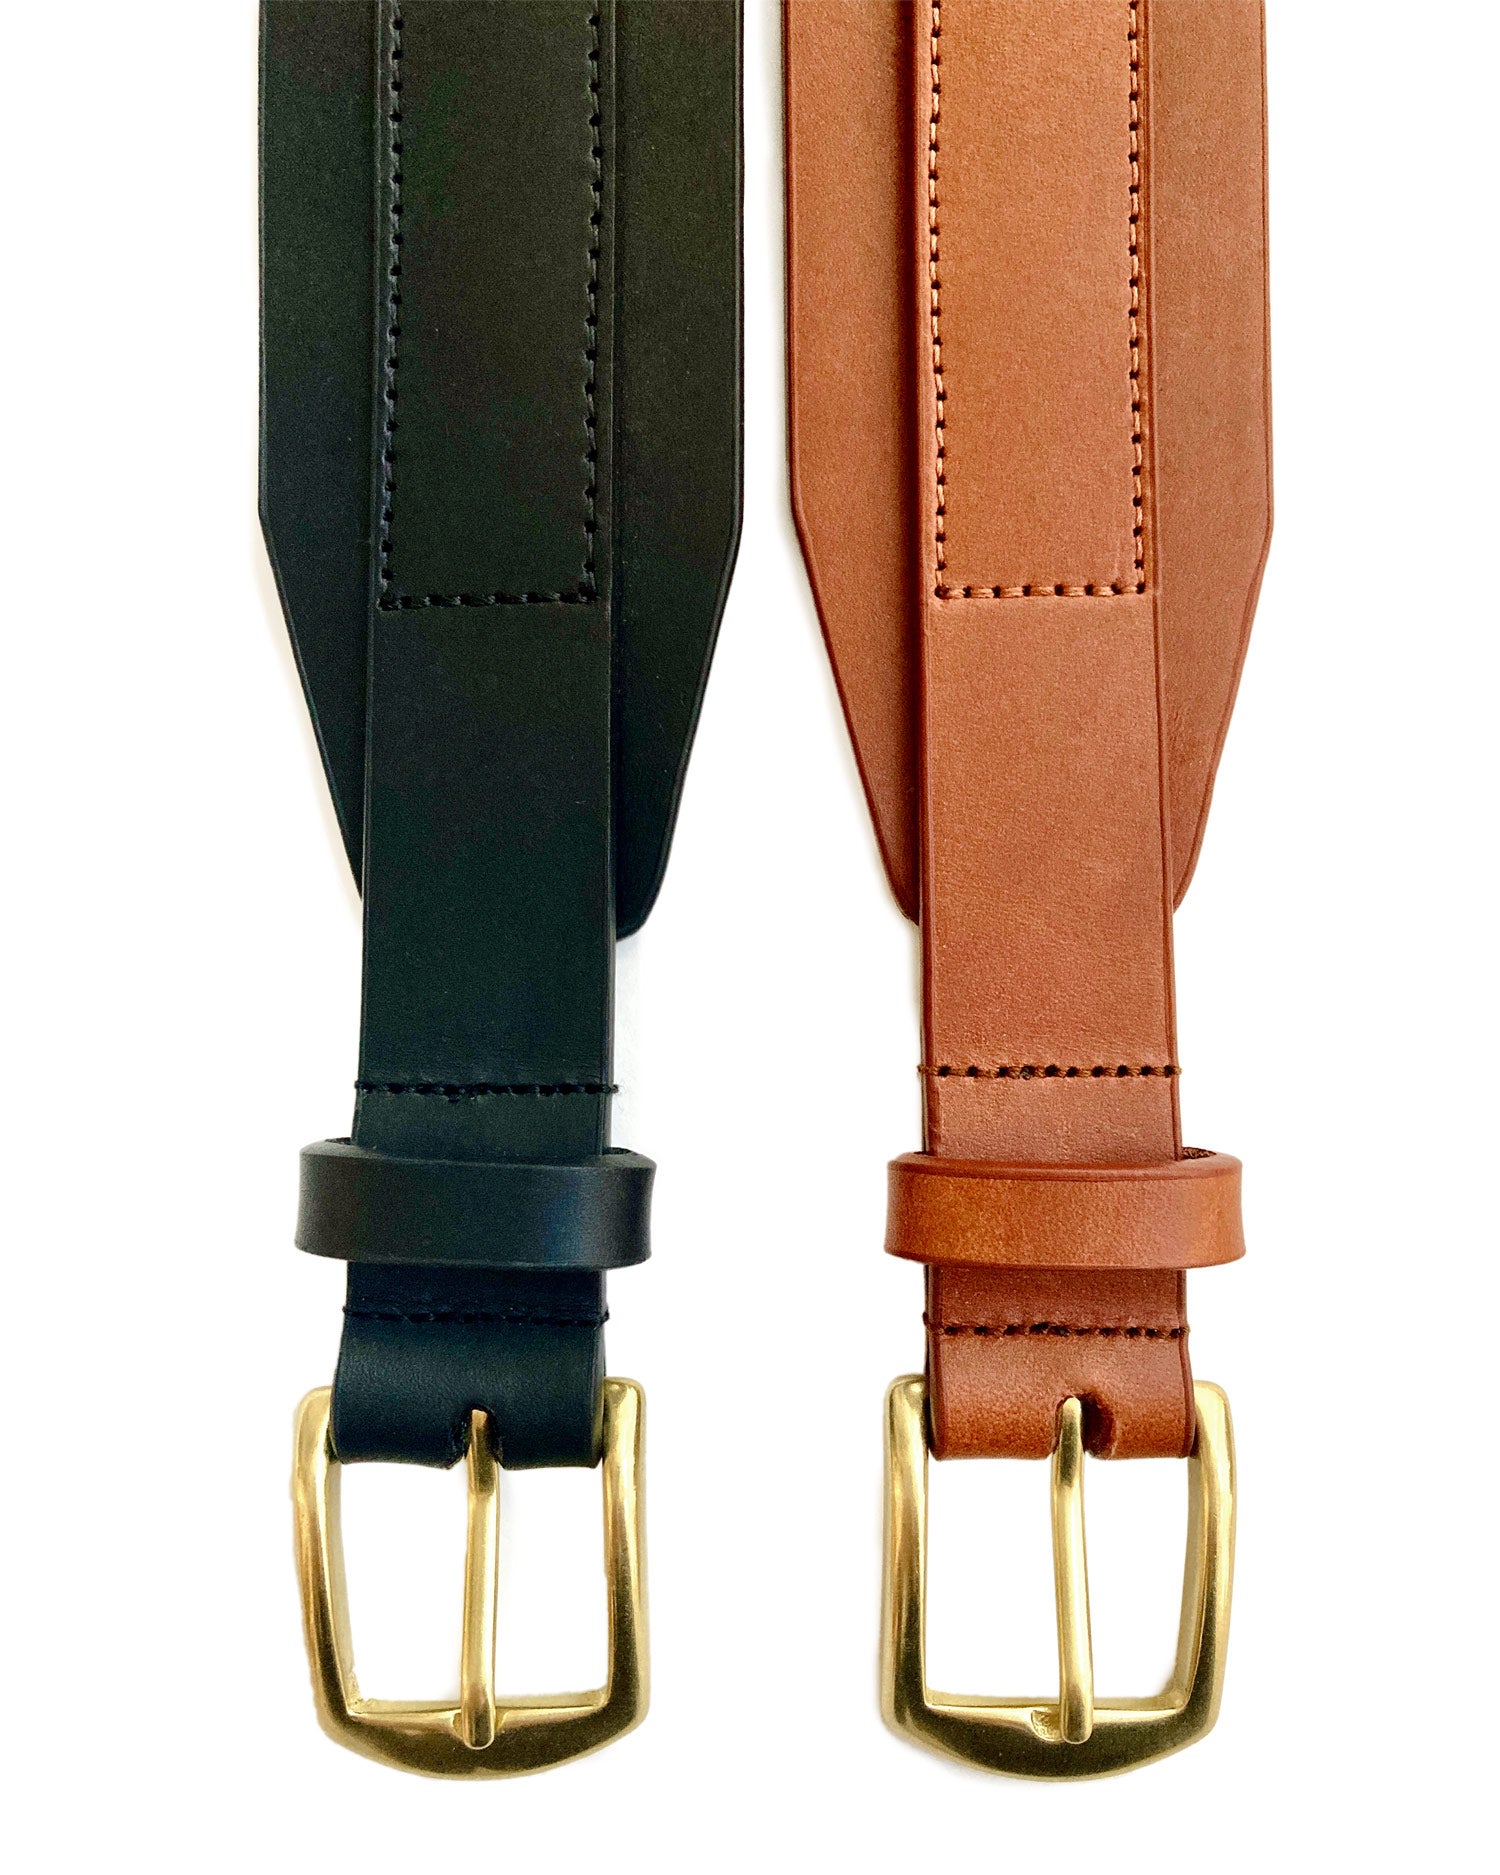 Genuine Leather Contour Belt